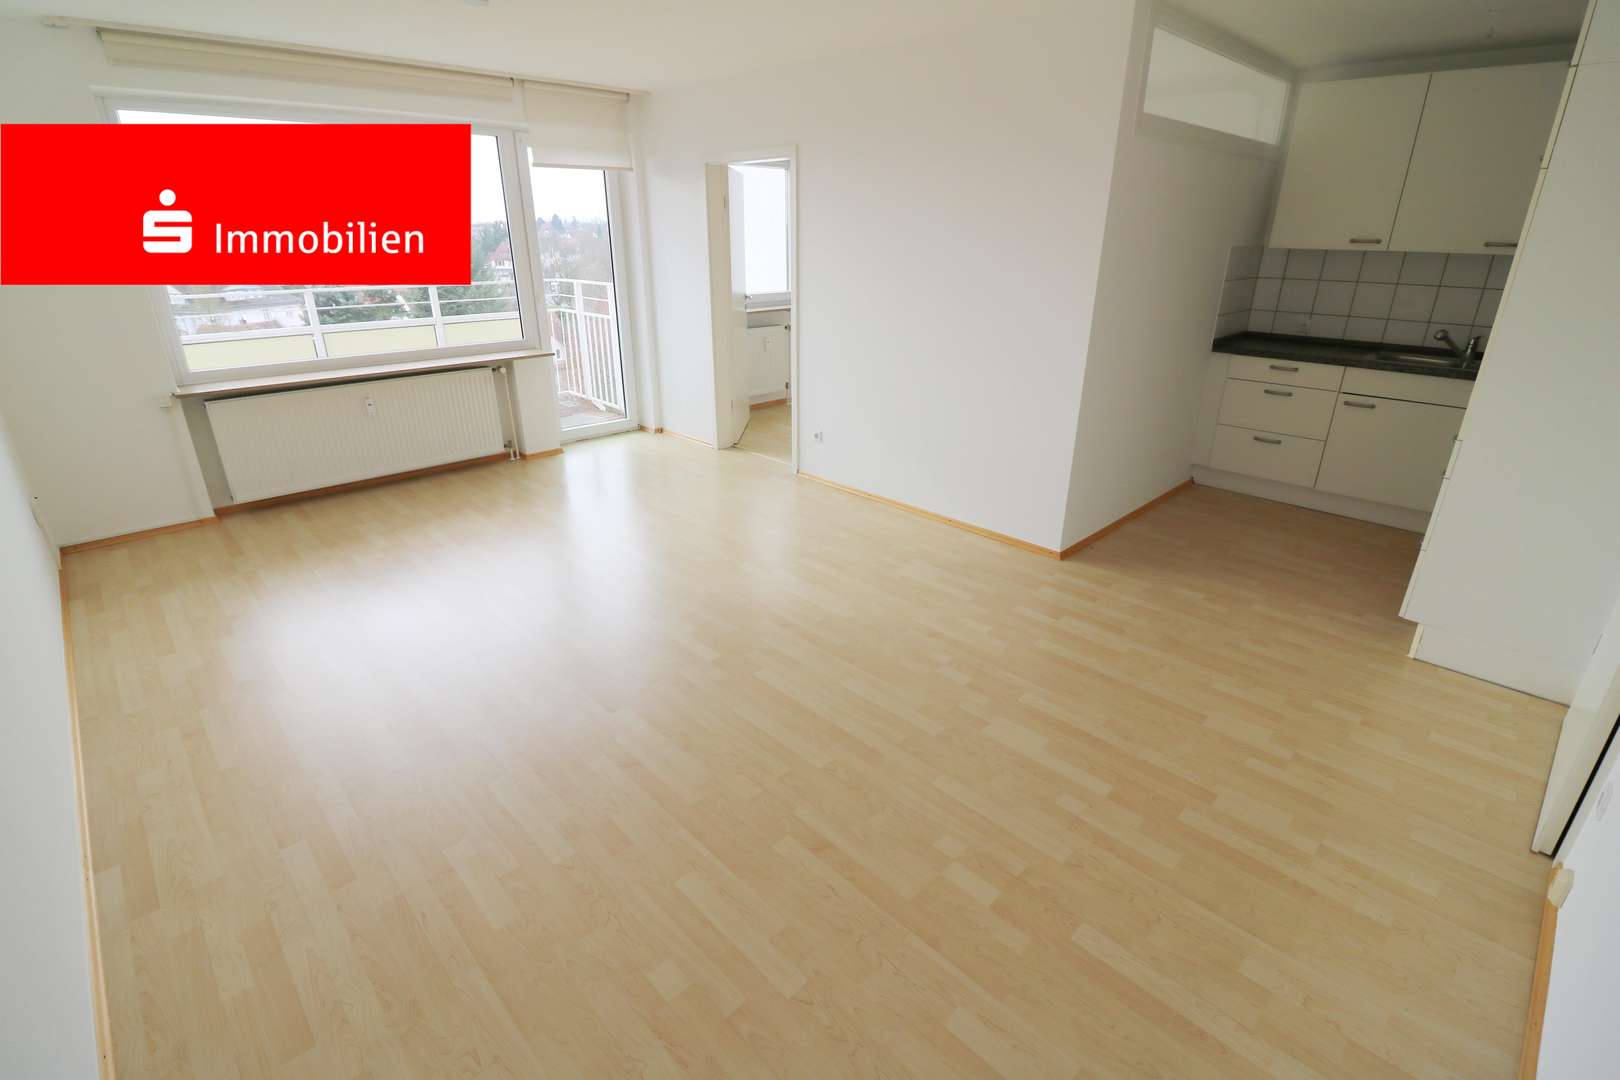 Wohn-Essbereich - Etagenwohnung in 61352 Bad Homburg mit 42m² kaufen